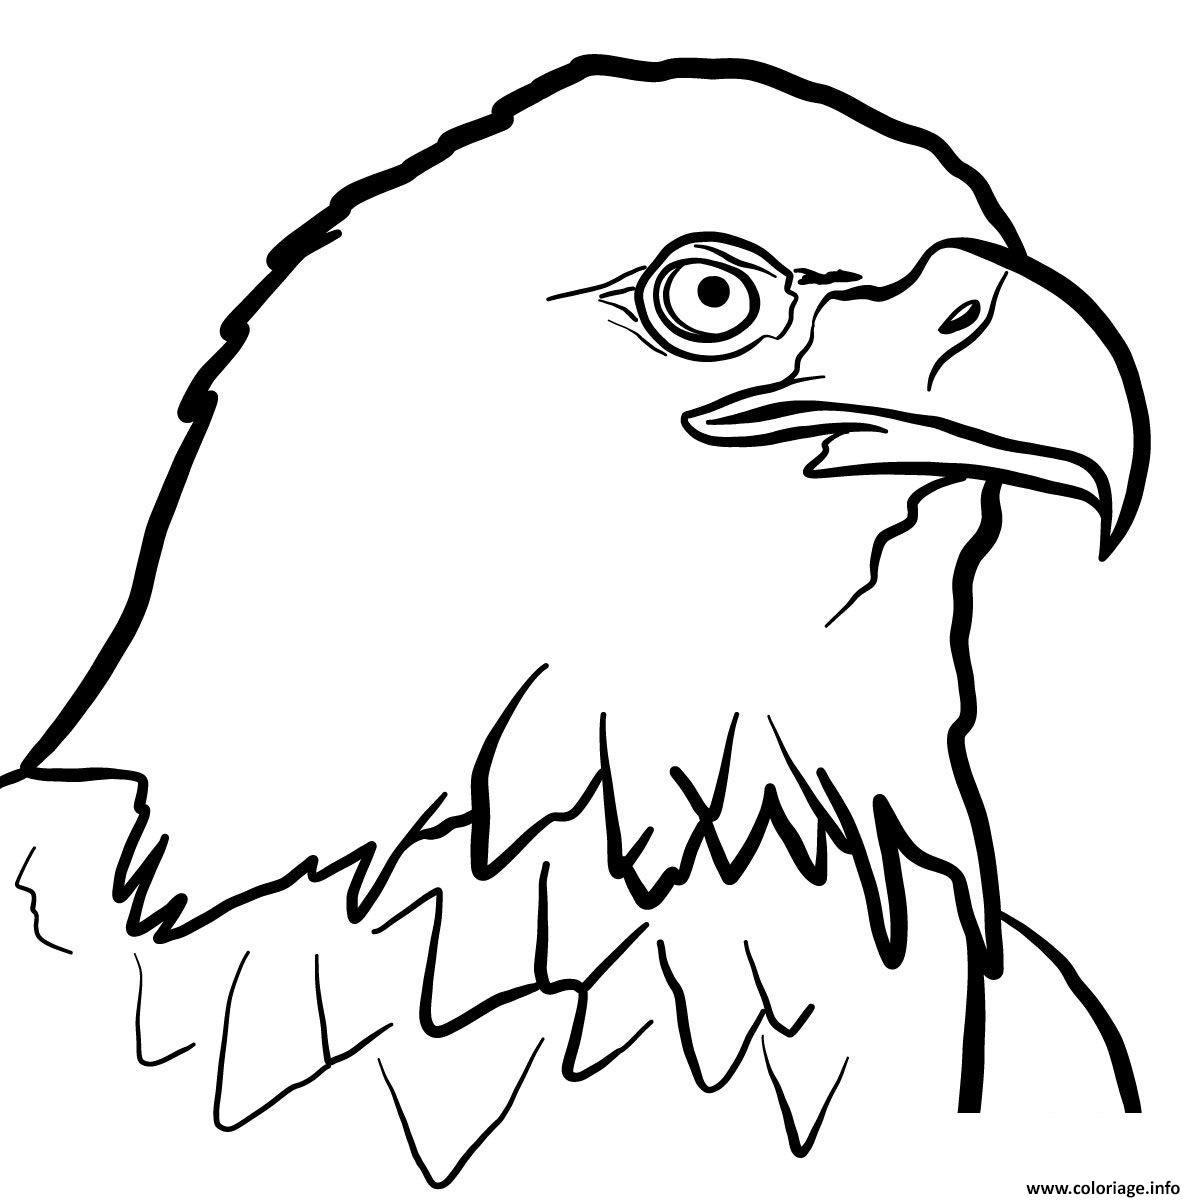 Орел рисунок. Рисунок орла для срисовки. Орел раскраска для детей. Голова орла раскраска. Орел е б